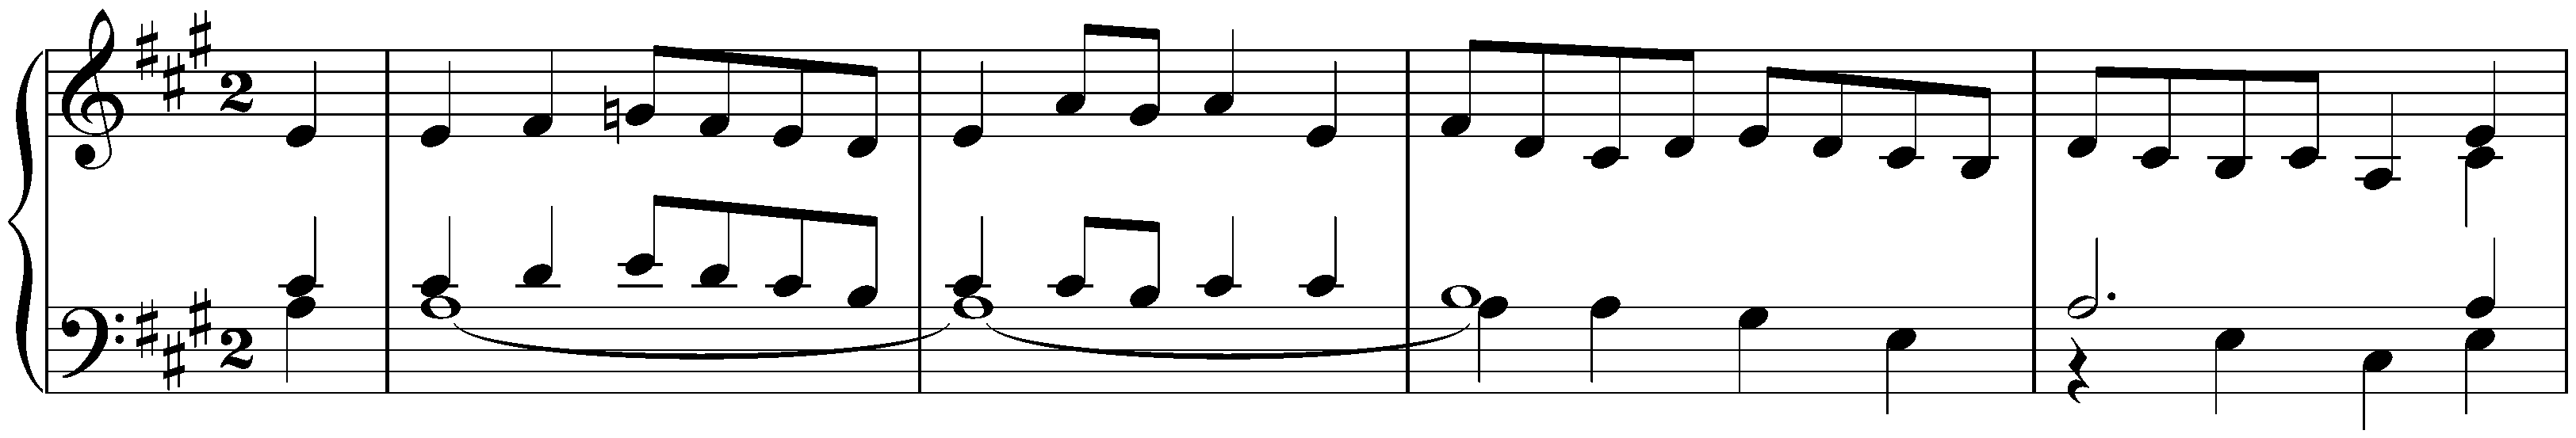 English Suite no. 2 in A minor, BWV 807; 5. Bourrée I – Bourrée II – Bourrée I